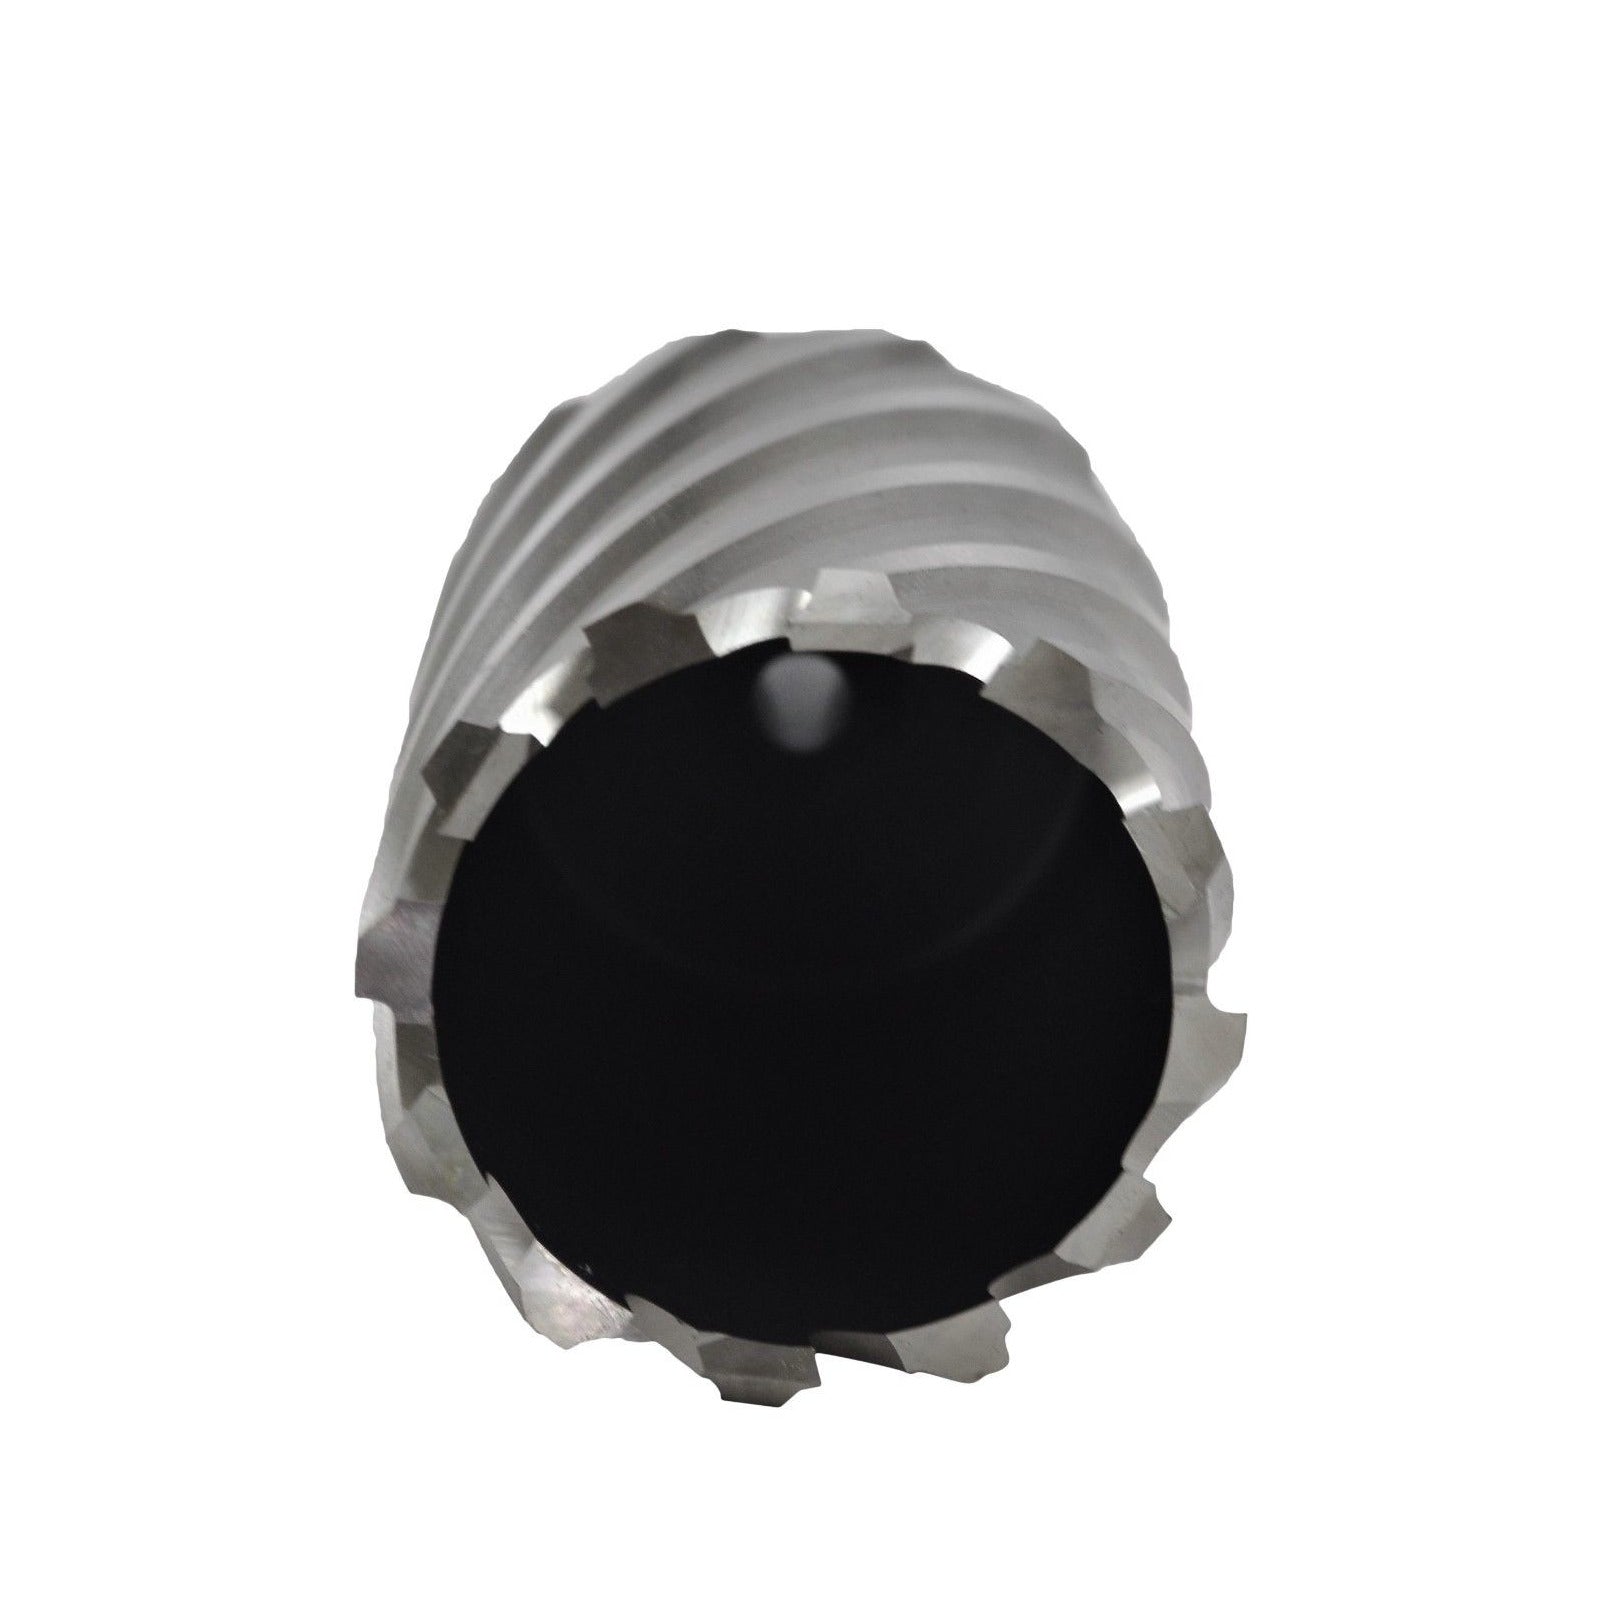 49x50 mm HSS Annular Broach Cutter ; Rotabroach Magnetic Drill ; Universal Shank